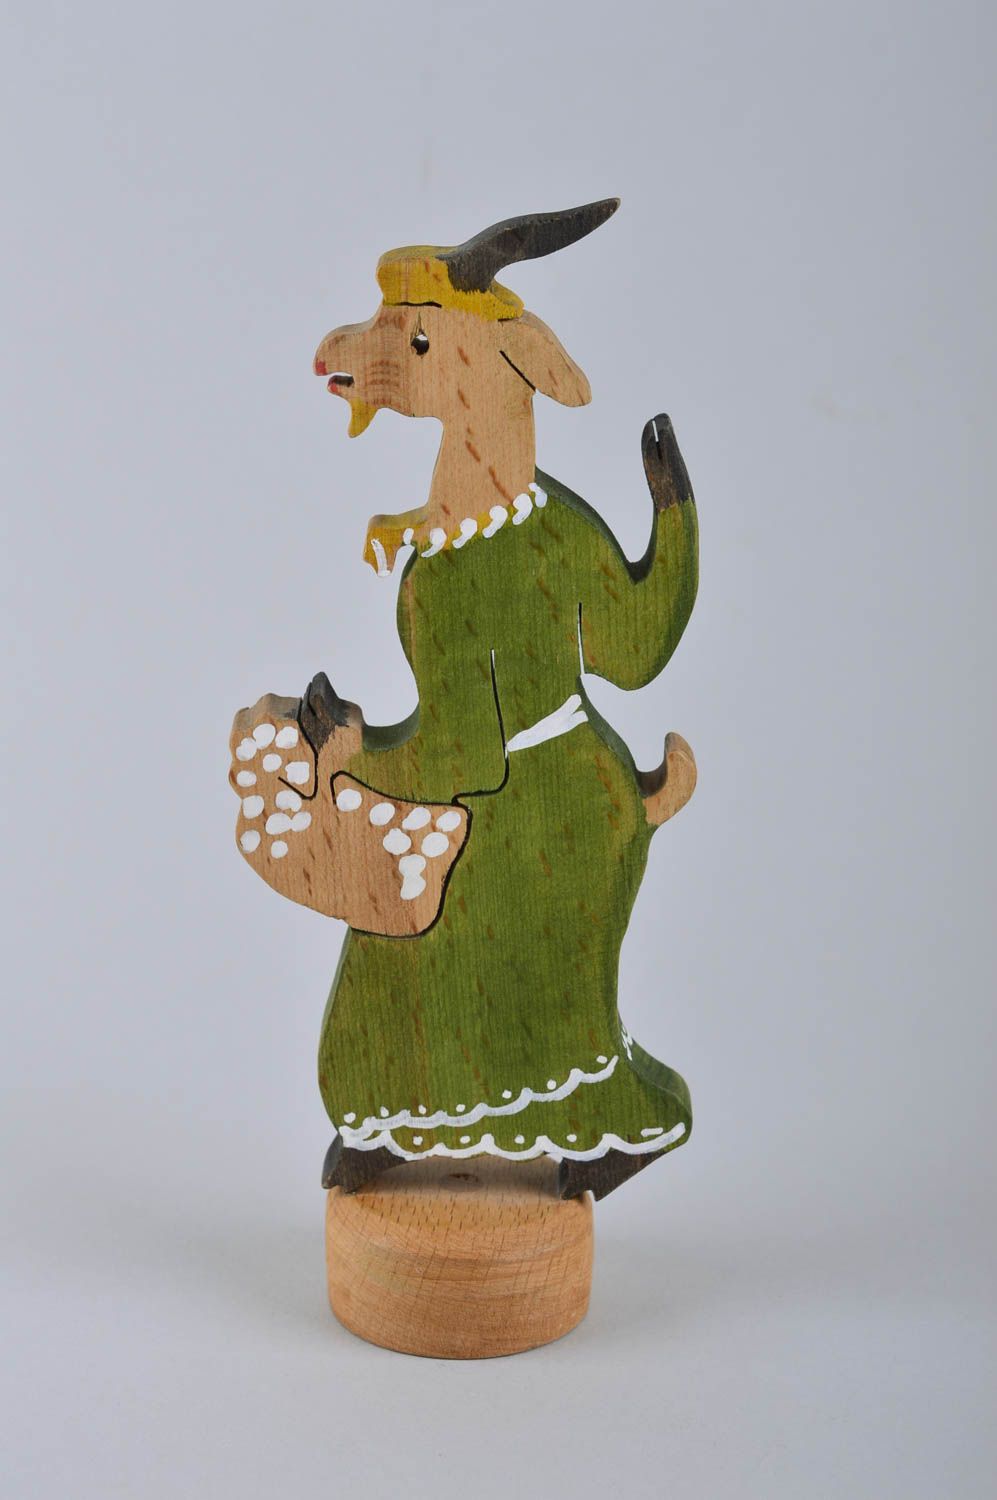 Игрушка ручной работы игрушка из дерева детская фигурка из дерева Козочка фото 2